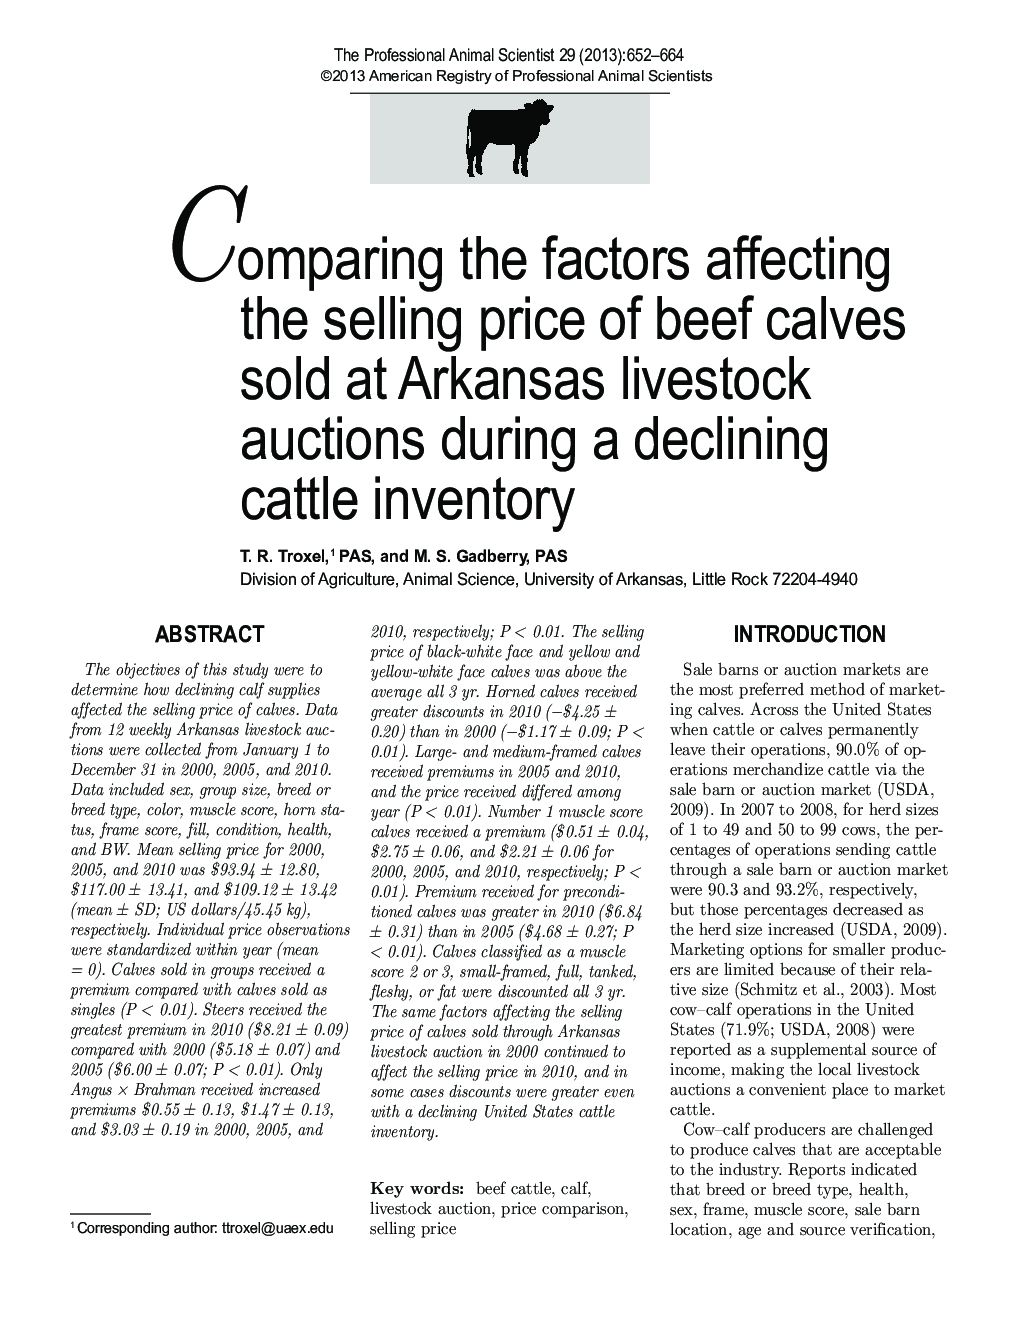 مقایسه عوامل موثر بر قیمت فروش گوساله های گوشت گاو که در مزرعه ای آرکانزاس فروخته می شود در طی یک موجودی گاو کاهش یافته 